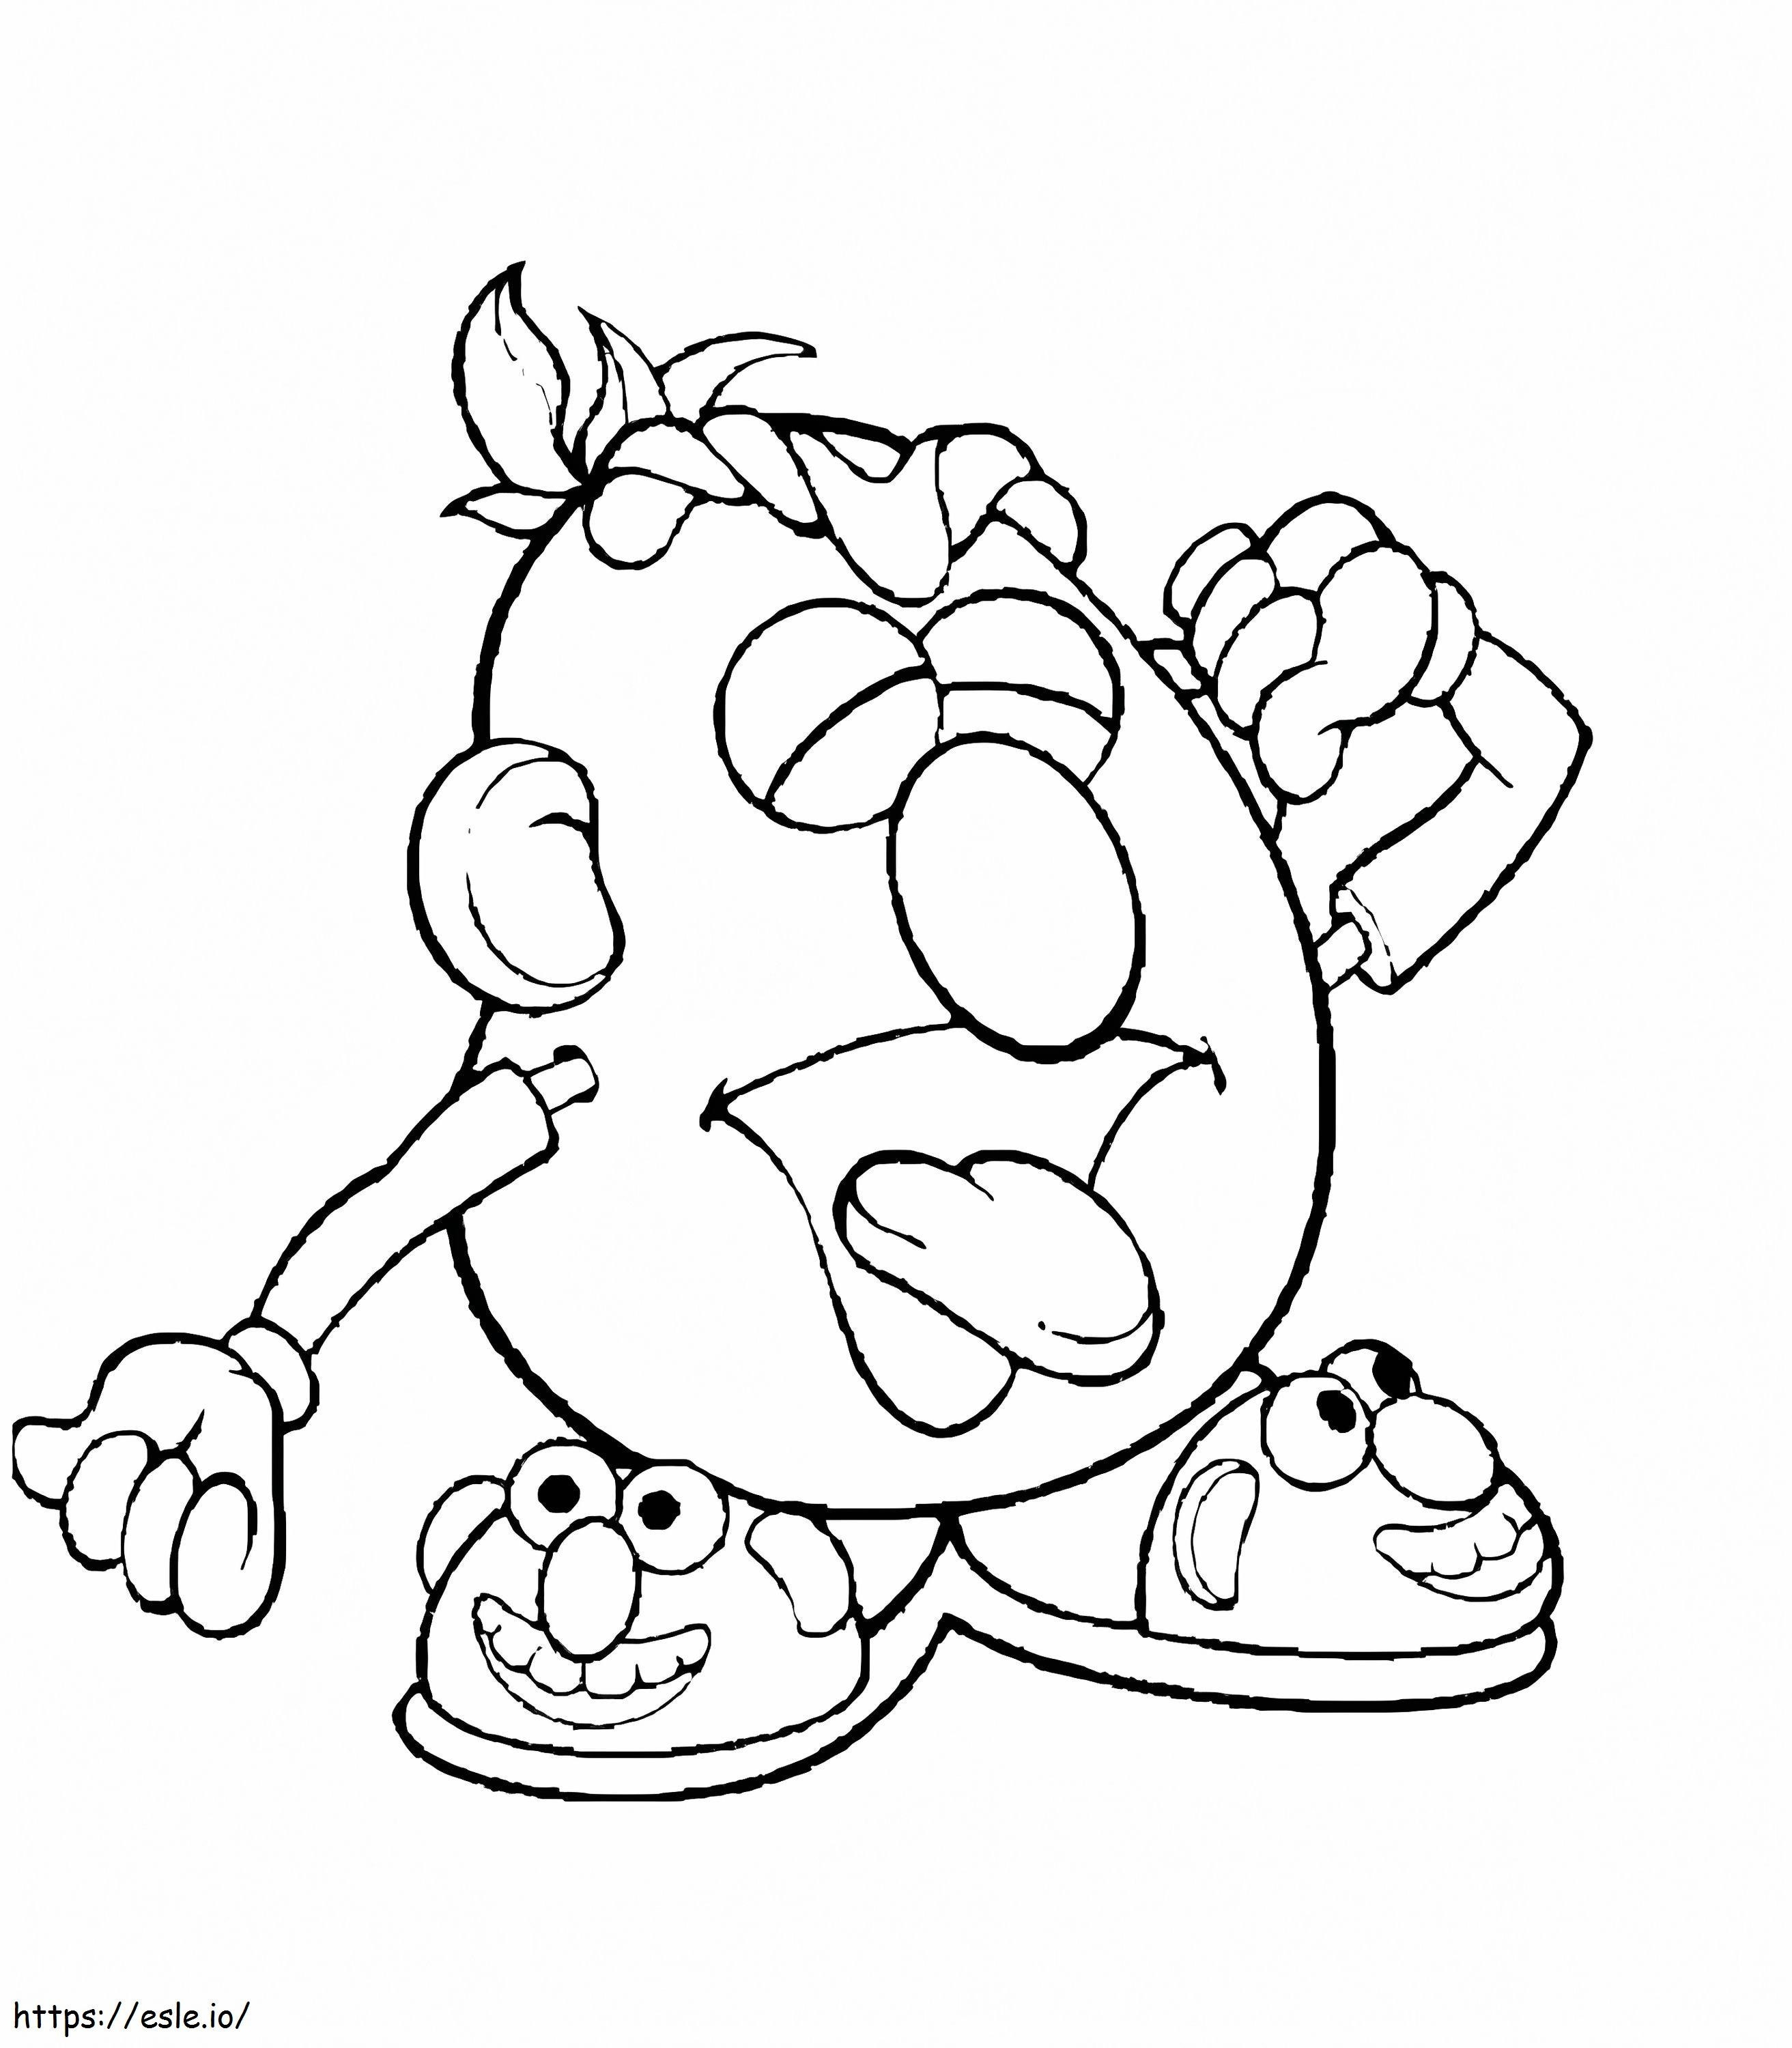 Coloriage Mr Potato Head qui joue se réveille à imprimer dessin